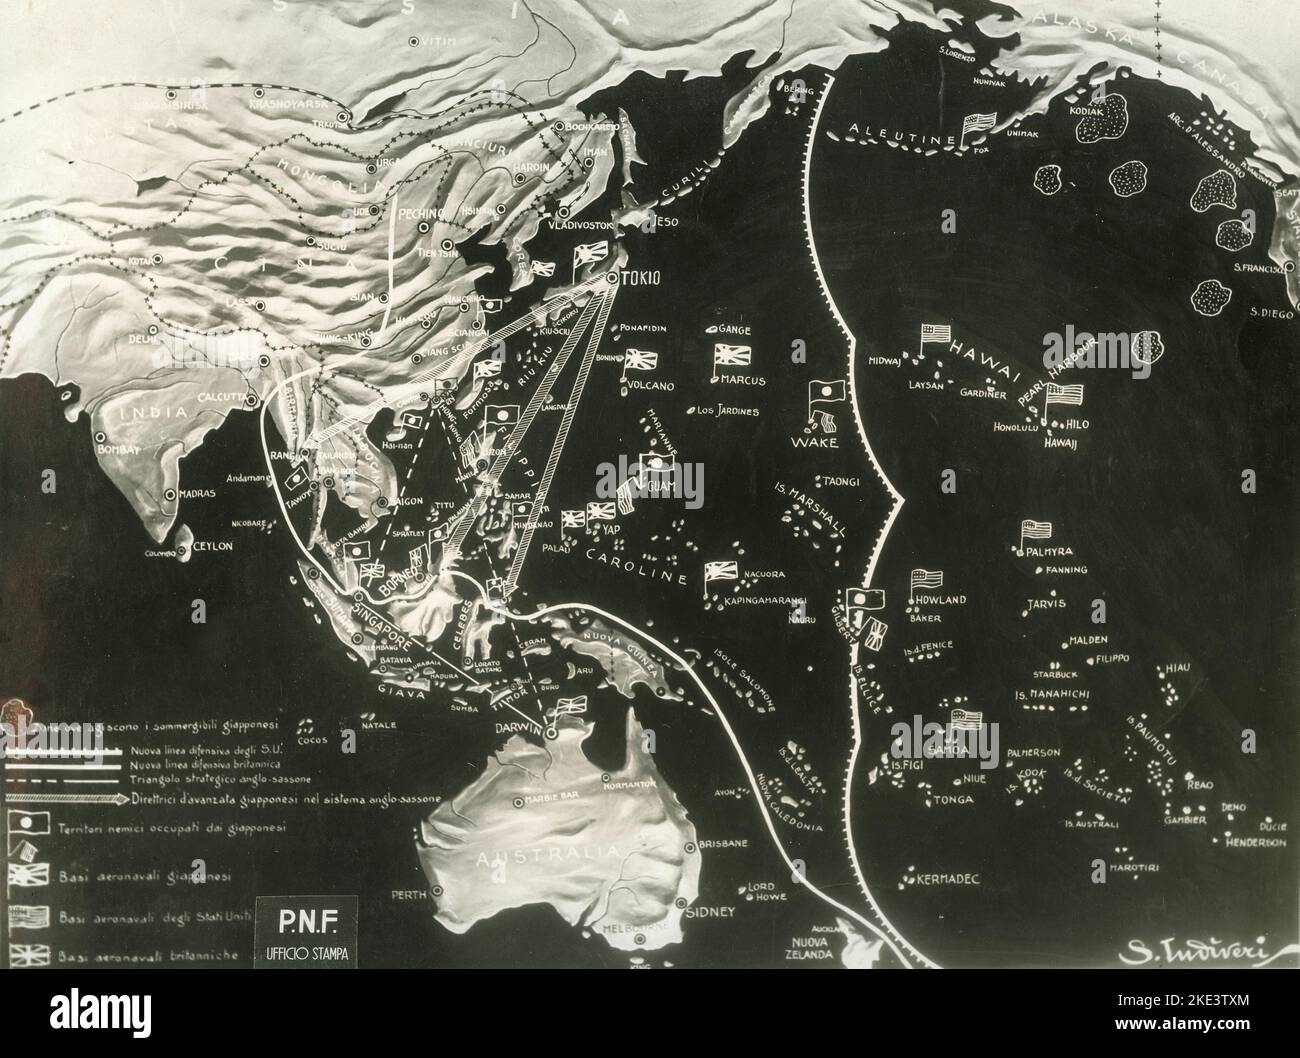 La guerre dans le front du Pacifique : carte de l'extrême Asie, de l'Australie et des îles du Pacifique, d'après la documentation du Parti fasciste national, Italie 1942 Banque D'Images